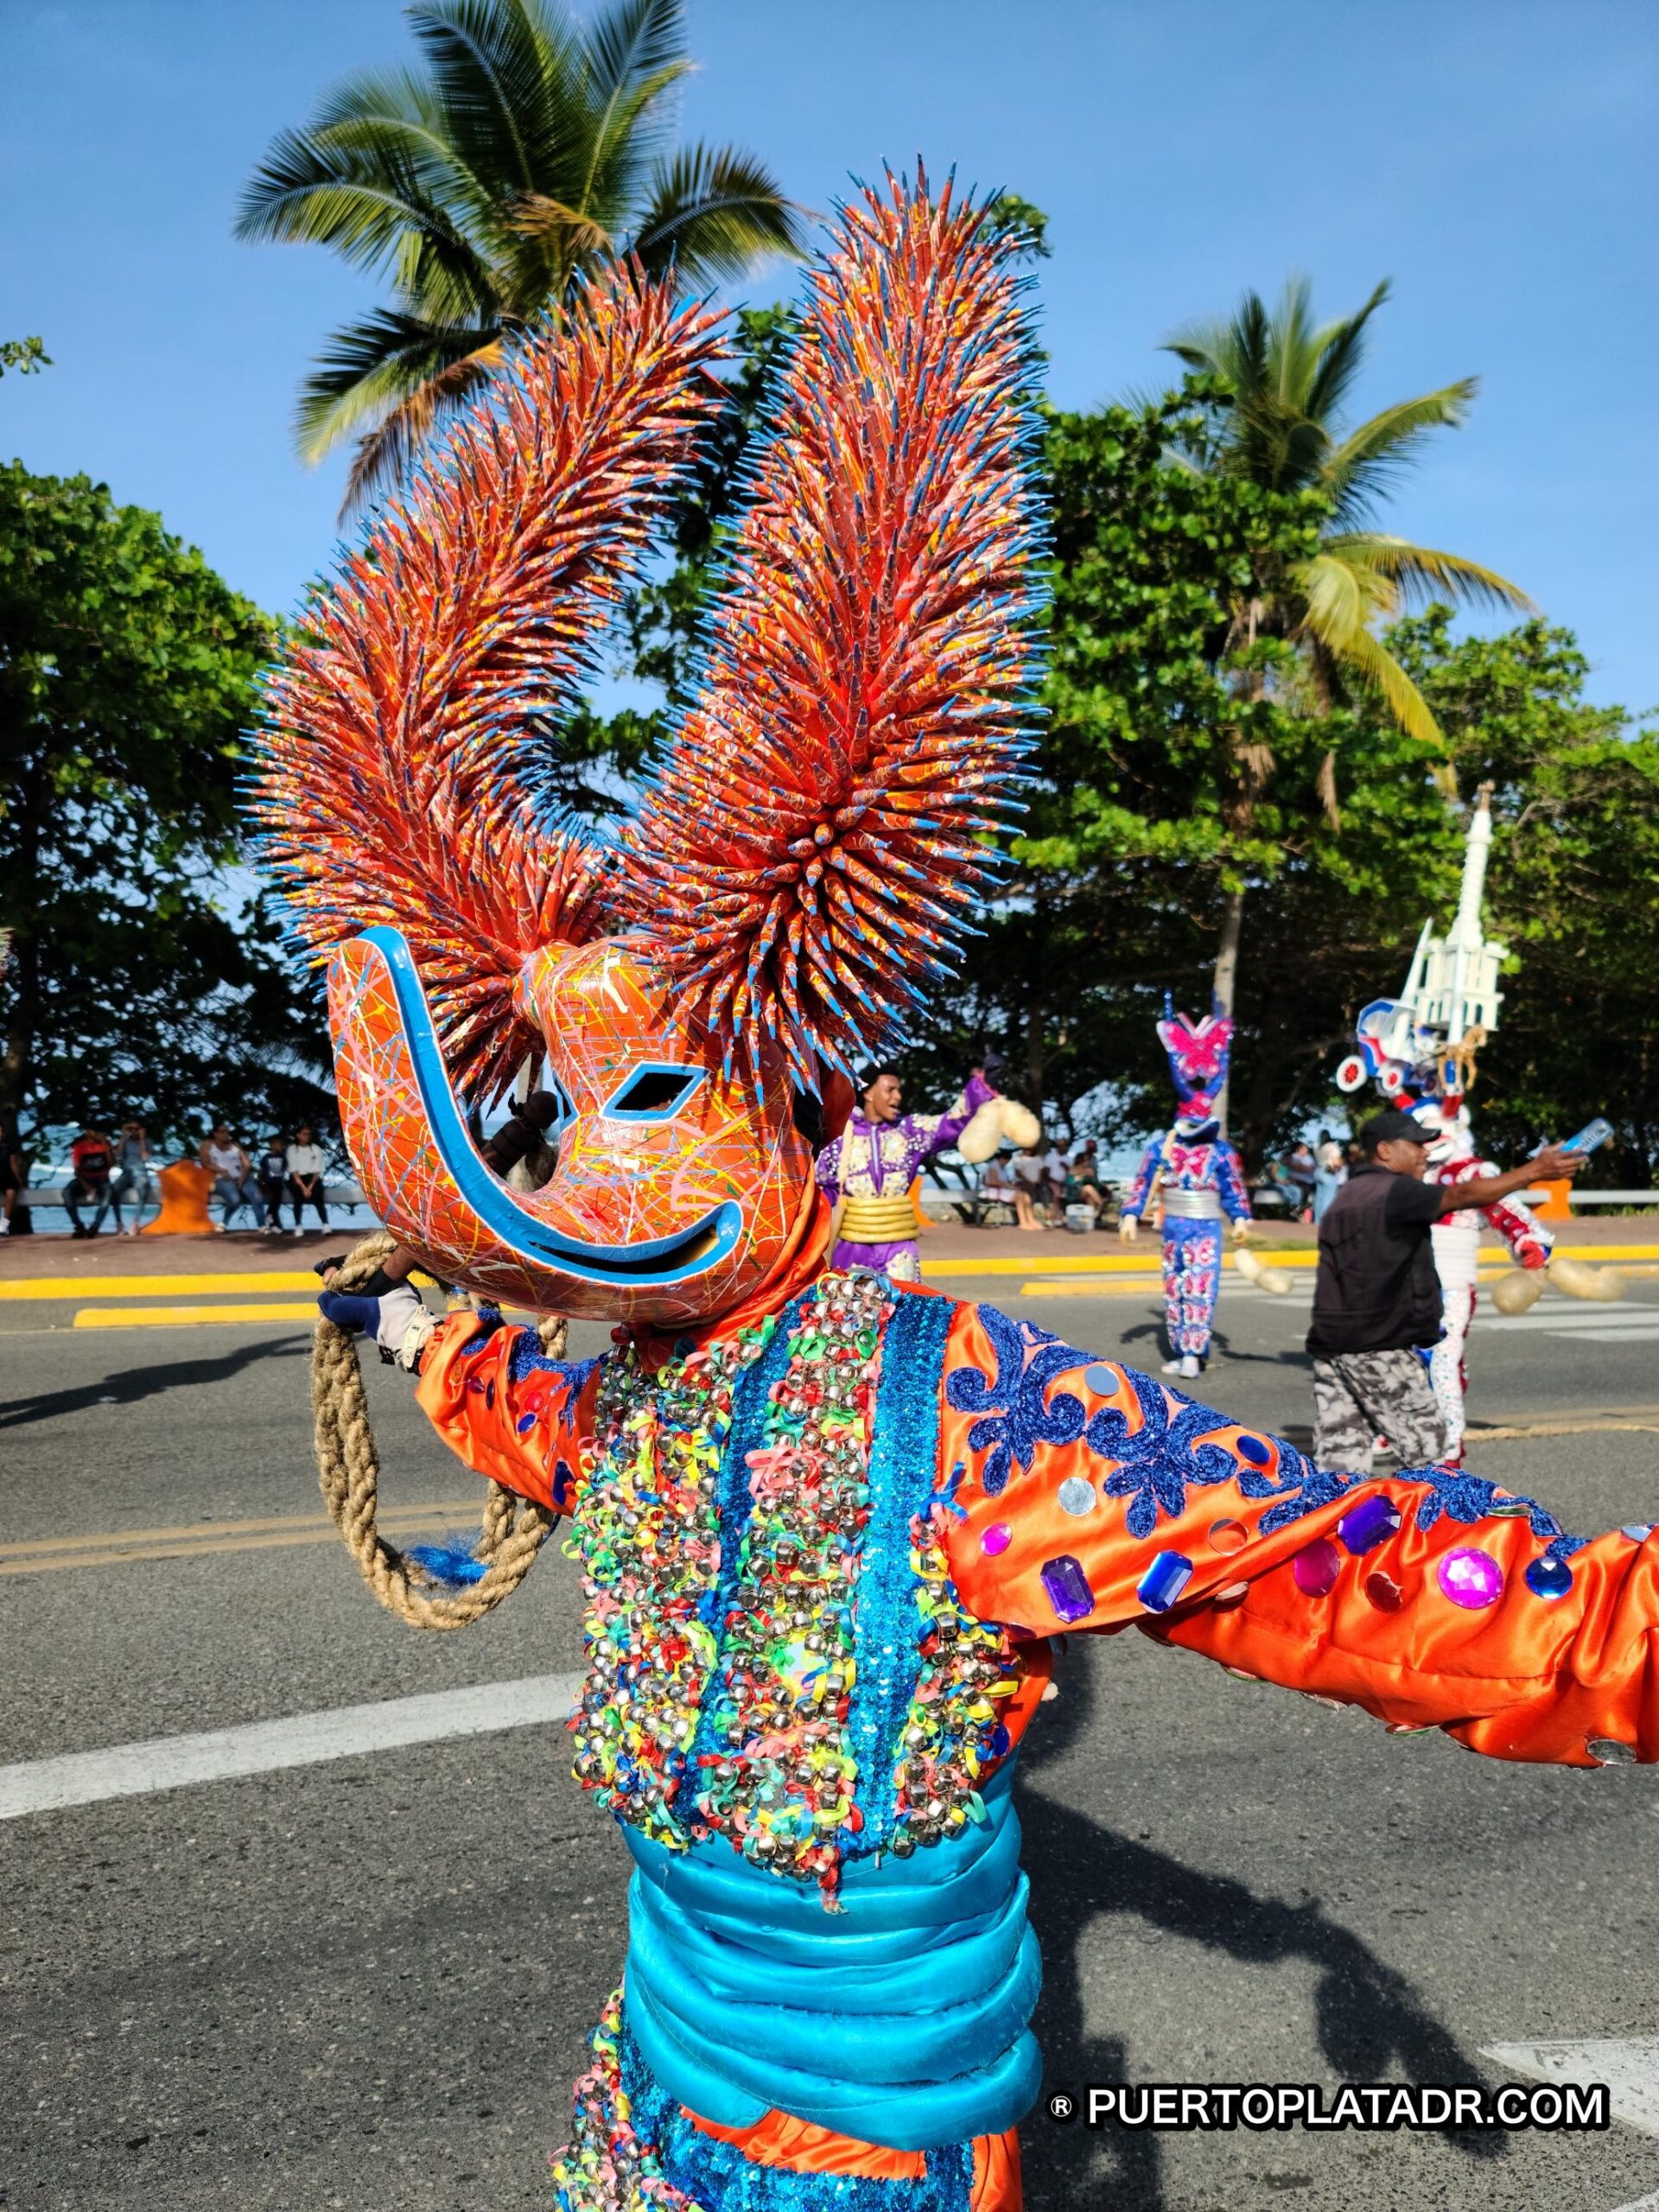 Carnival day in Puerto Plata Dominican Republic.